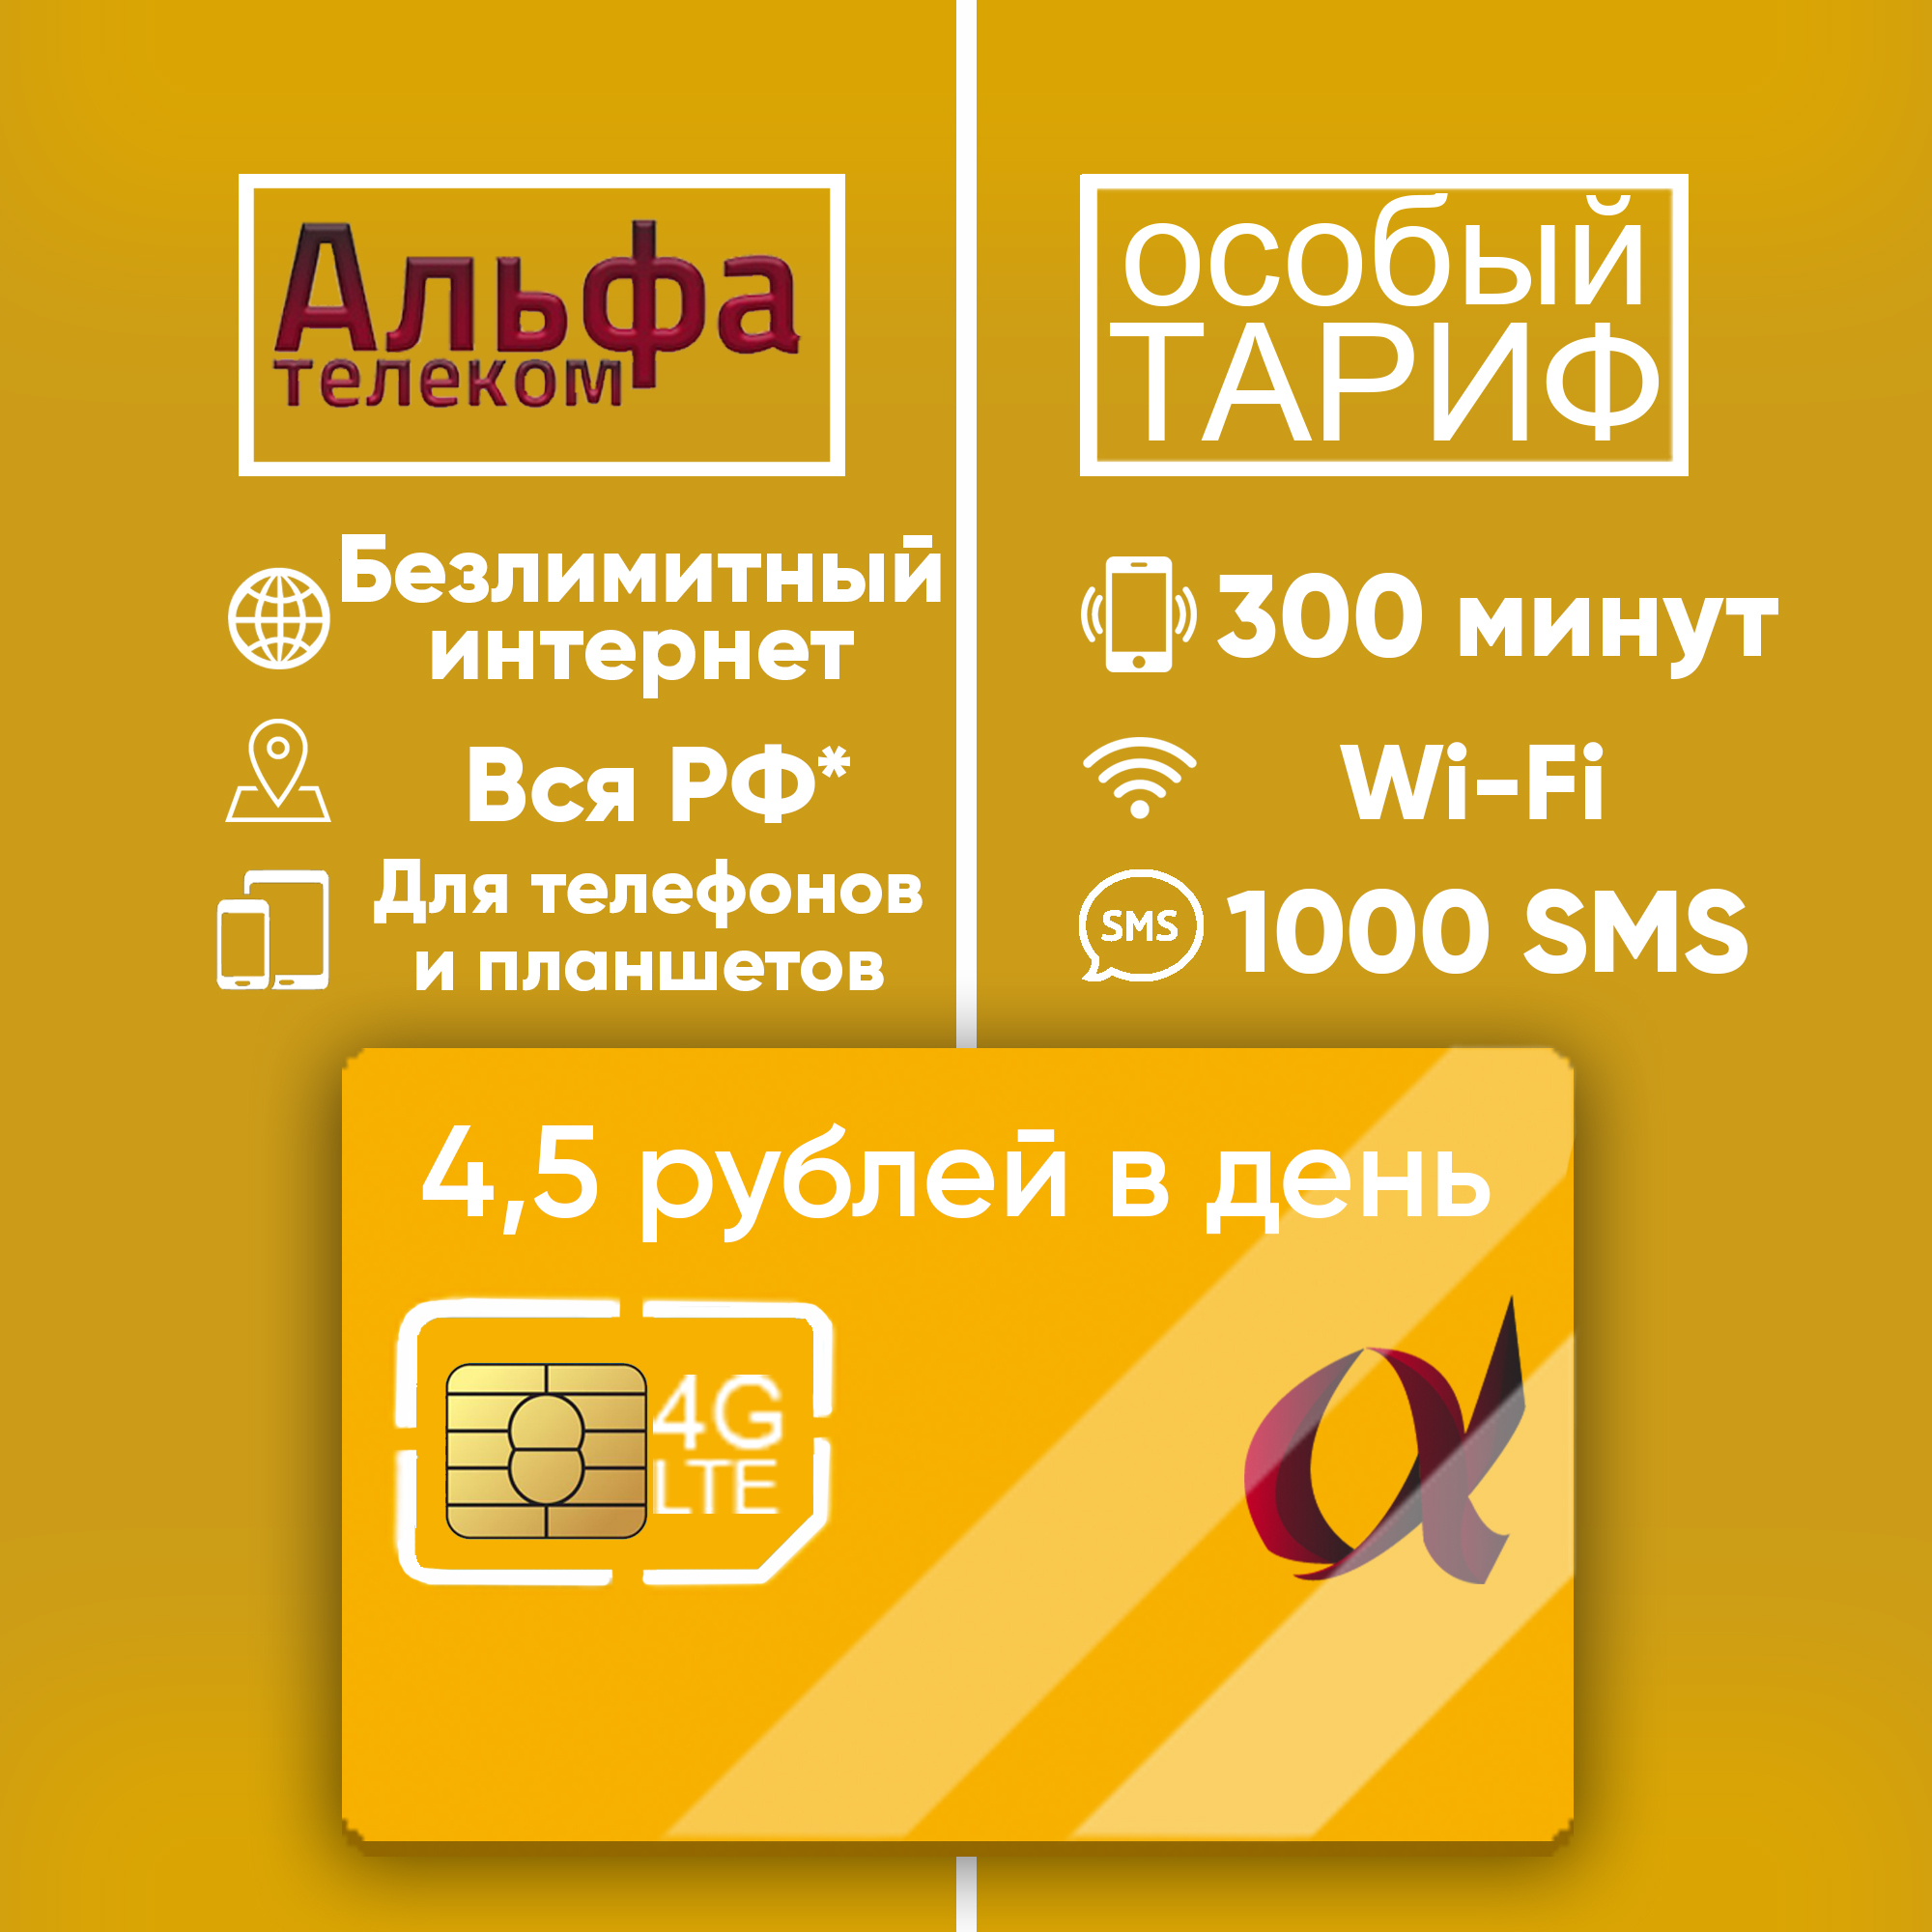 тариф для планшета, тариф для телефона альфателеком безлимитный интернет  300 мин  1000 sms за 4,5 руб. в день вся россия